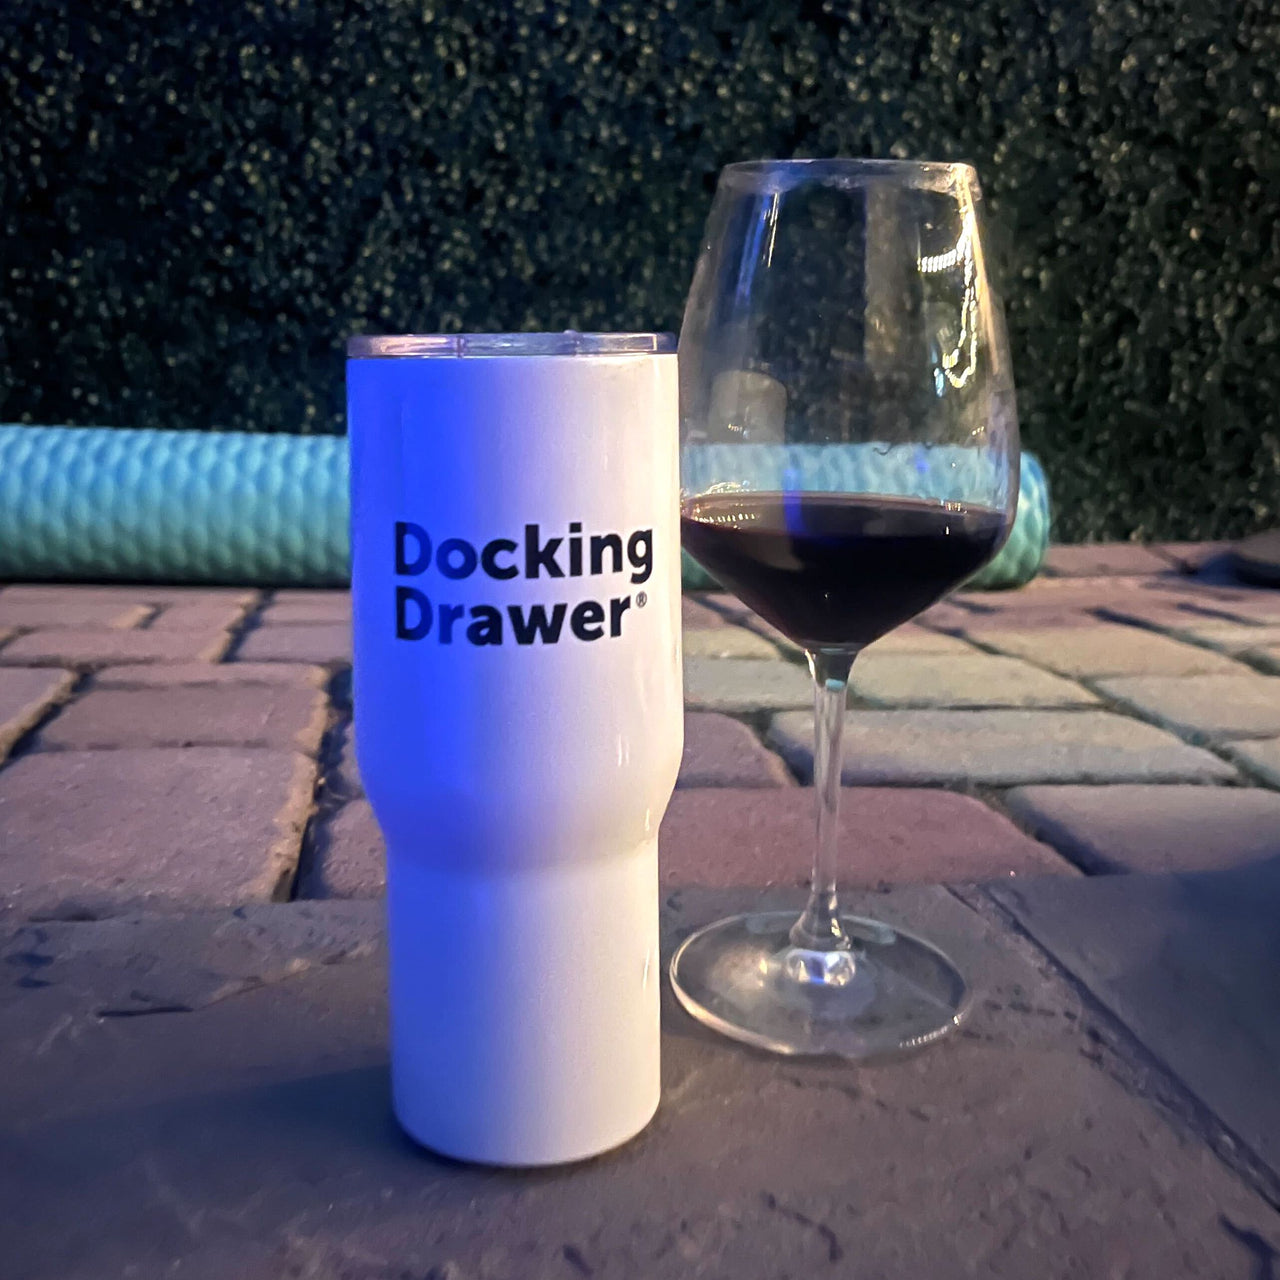 Docking Drawer Travel Mug